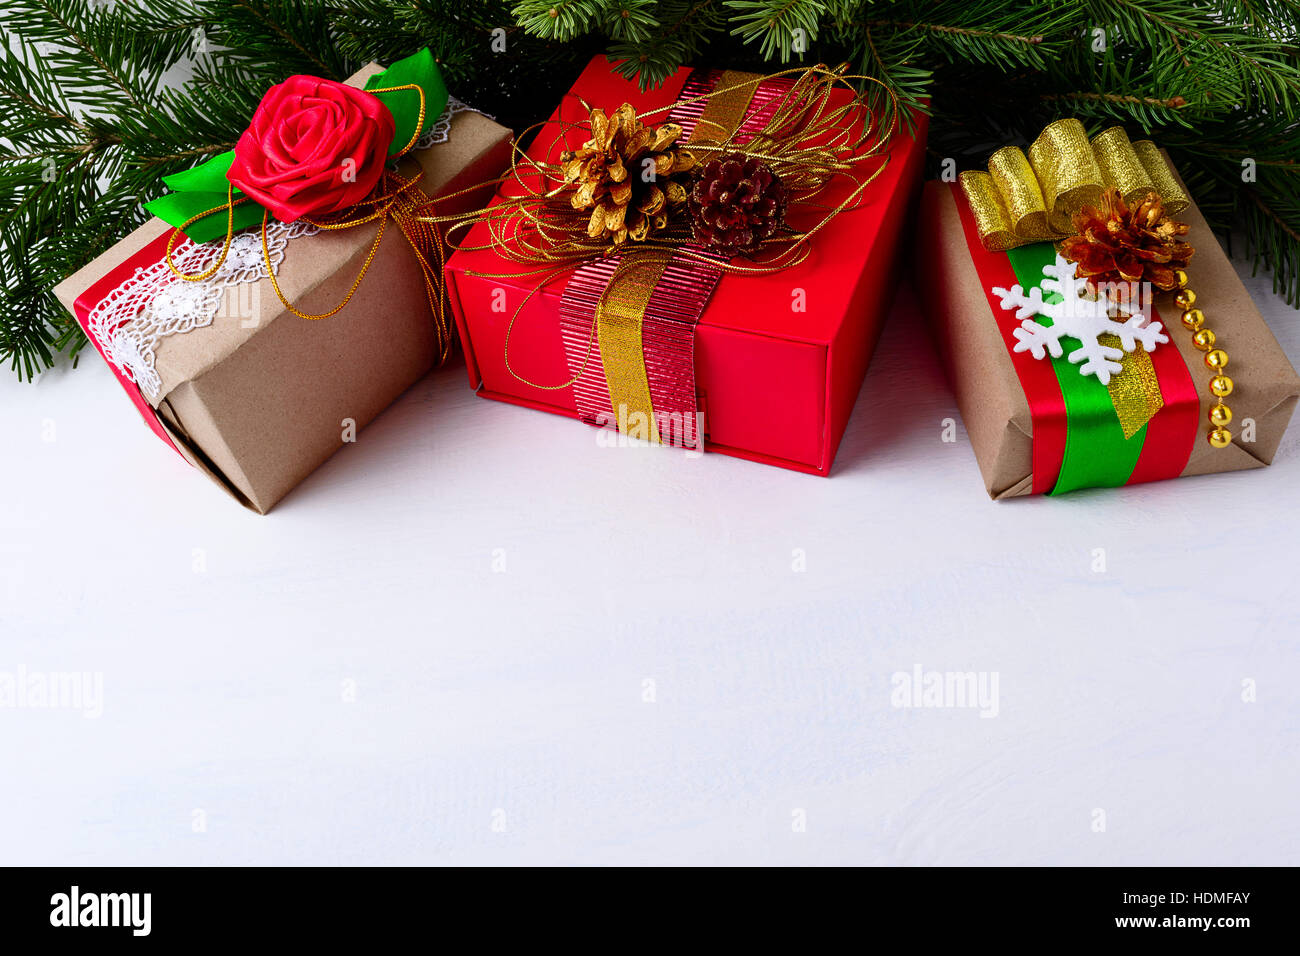 Fondo de navidad con cajas de regalo decoradas y las ramas de un árbol de  Navidad. Fondo de navidad con ramas de abeto y papel kraft para envolver  regalos Fotografía de stock -